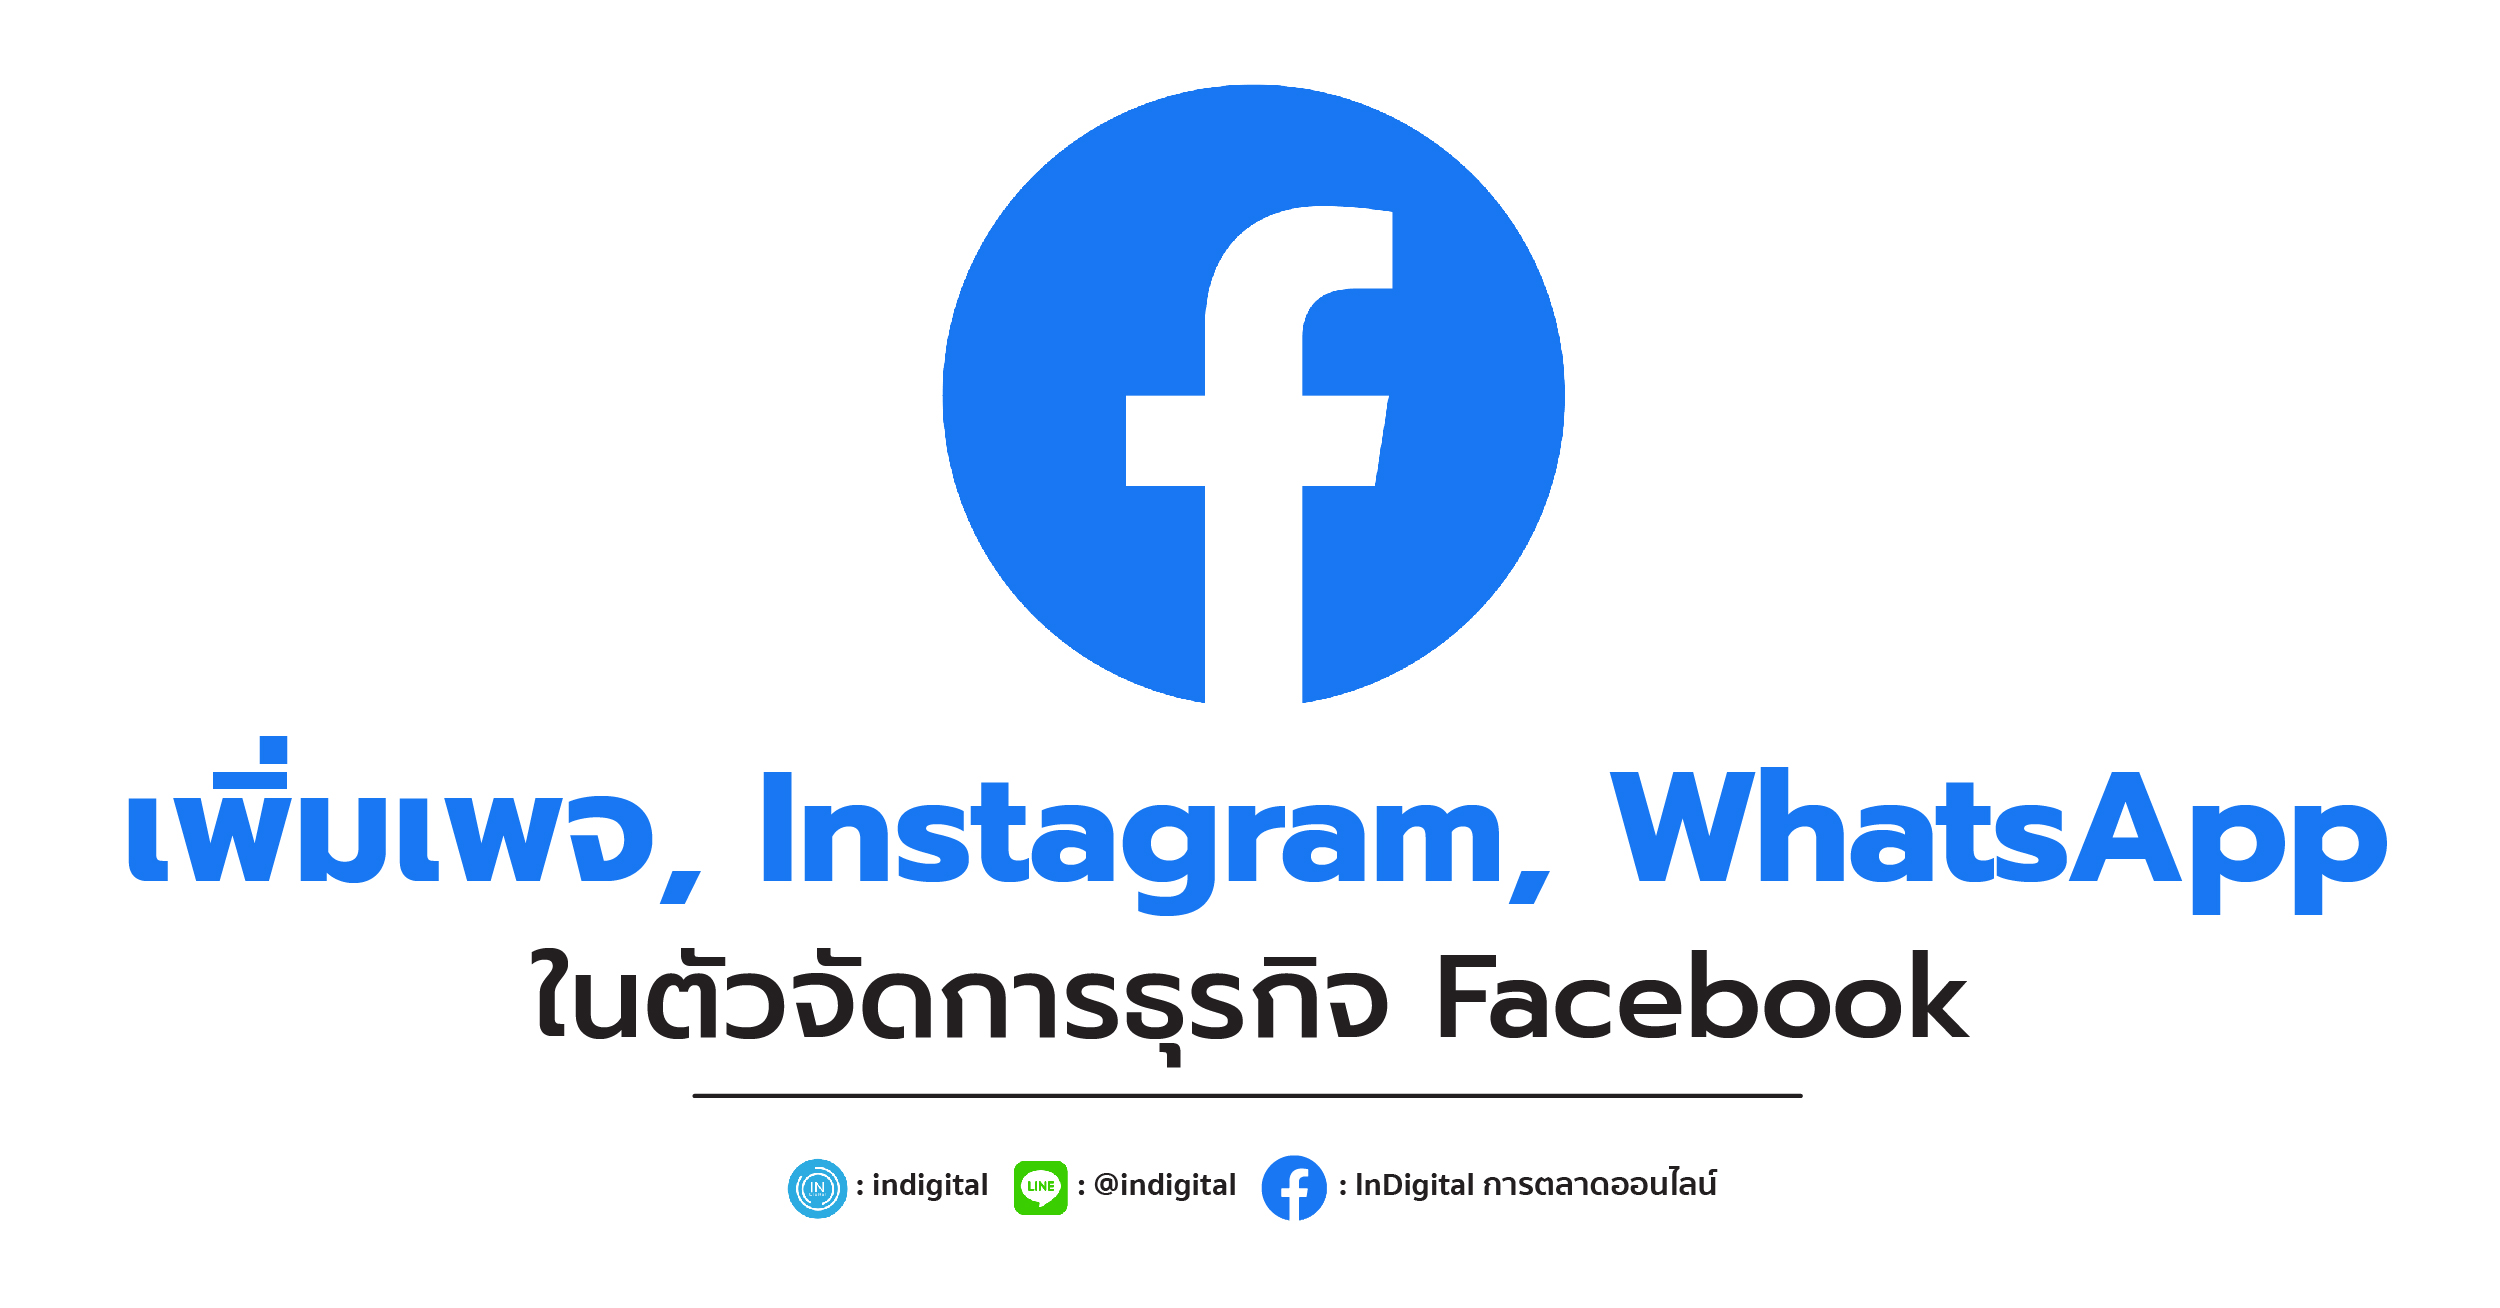 เพิ่มเพจ, Instagram, WhatsApp ในตัวจัดการธุรกิจ Facebook